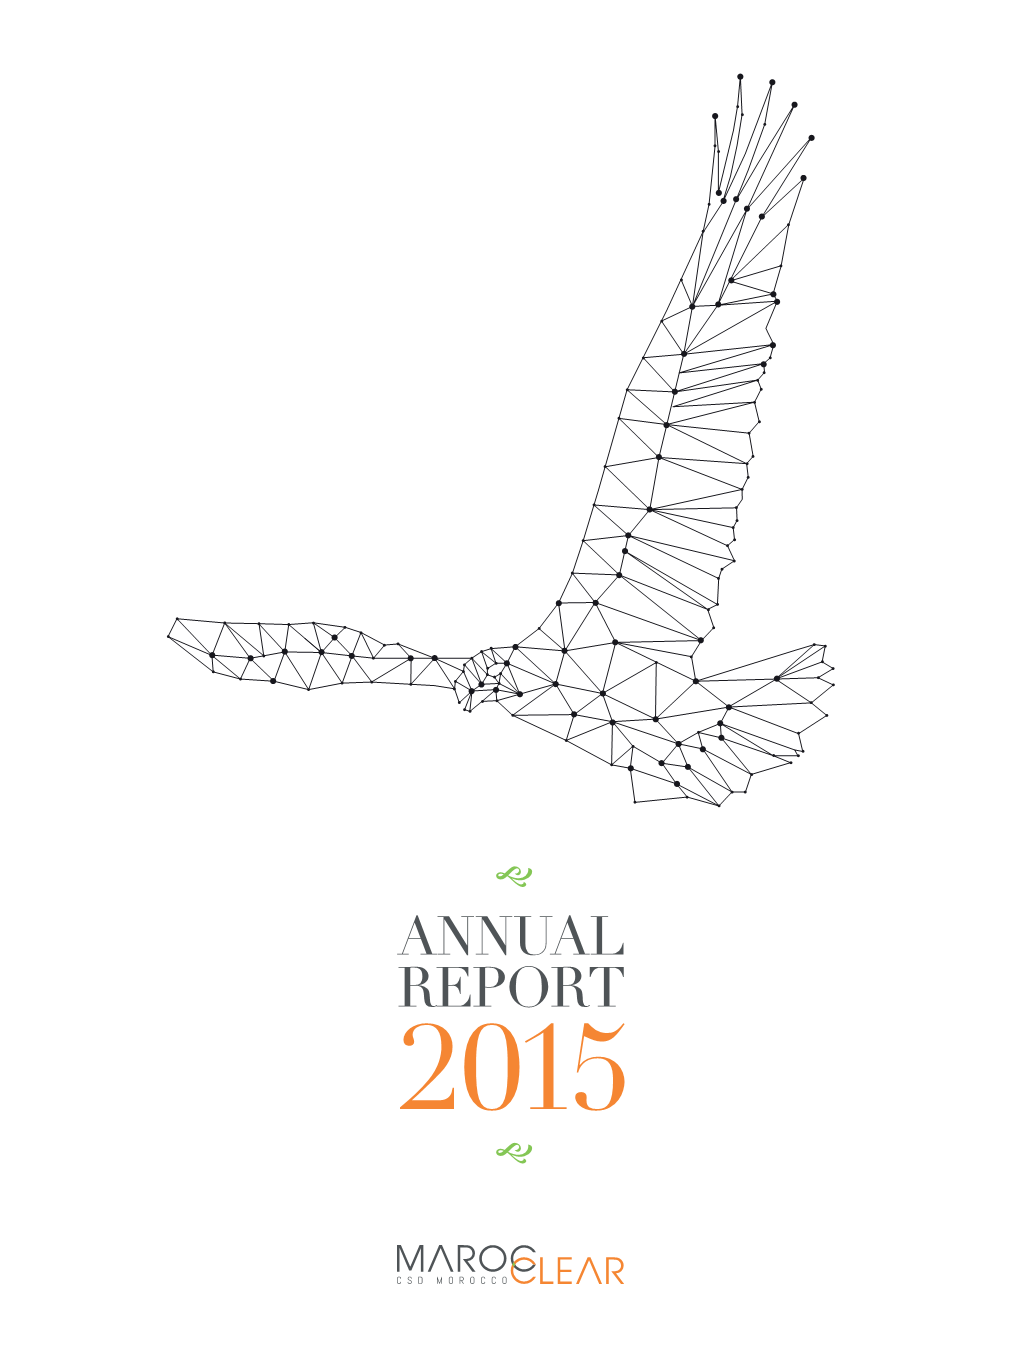 Annual Report 2015.Pdf